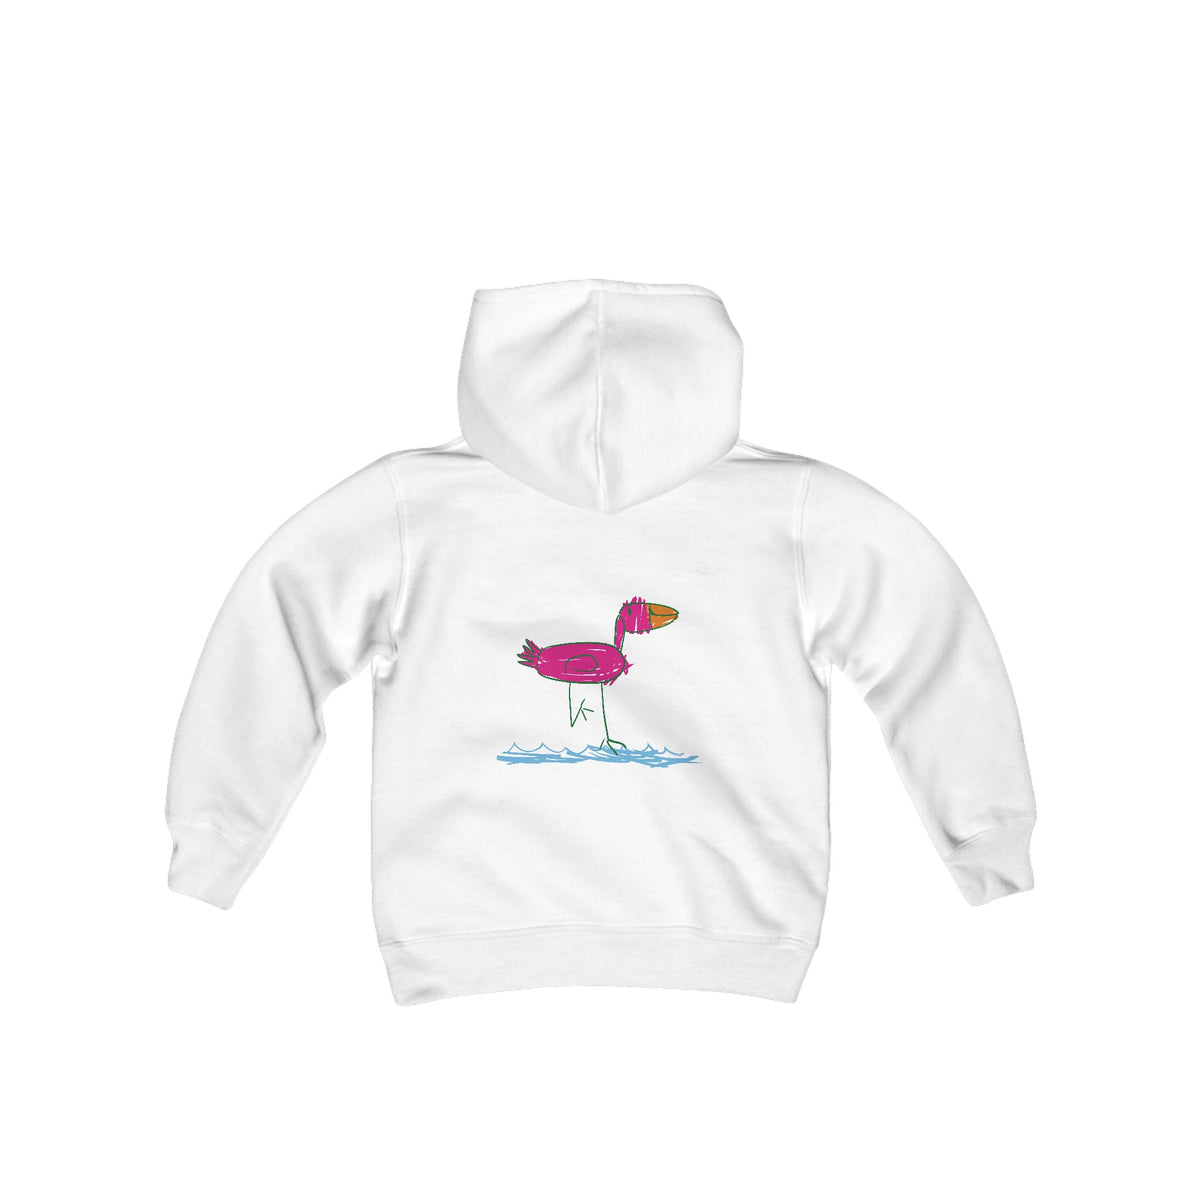 Youth Flamingo Sweatshirt